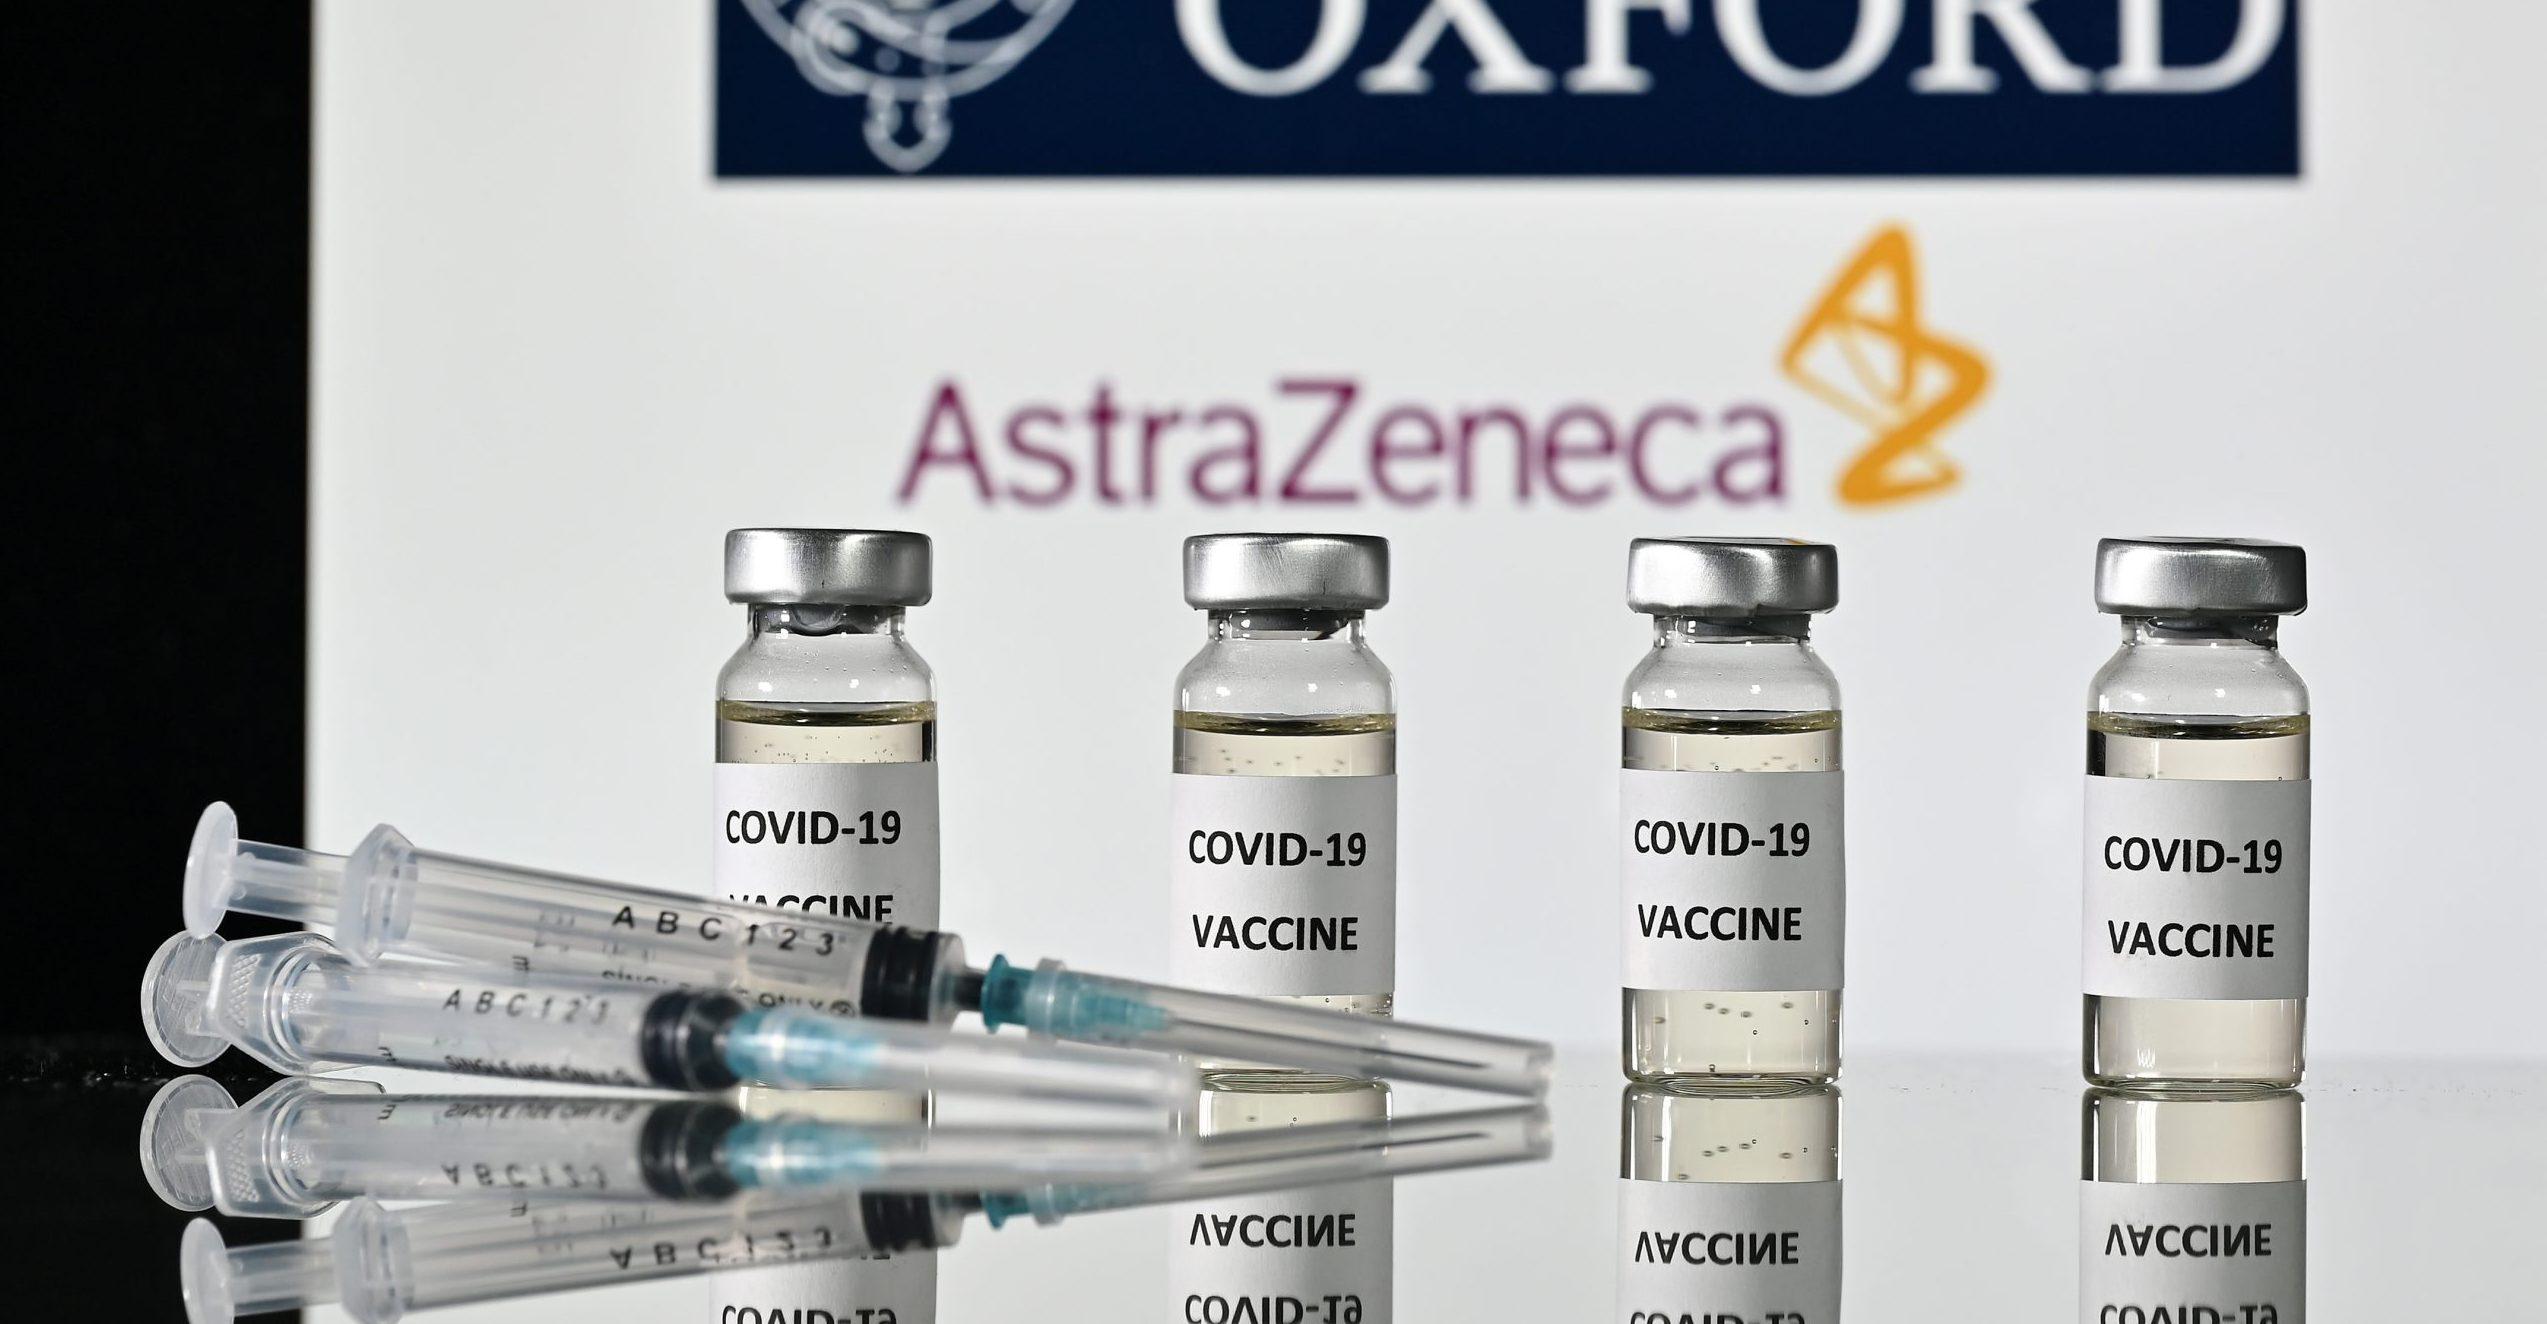 México recibirá vacuna de AstraZeneca en febrero y marzo a través de COVAX